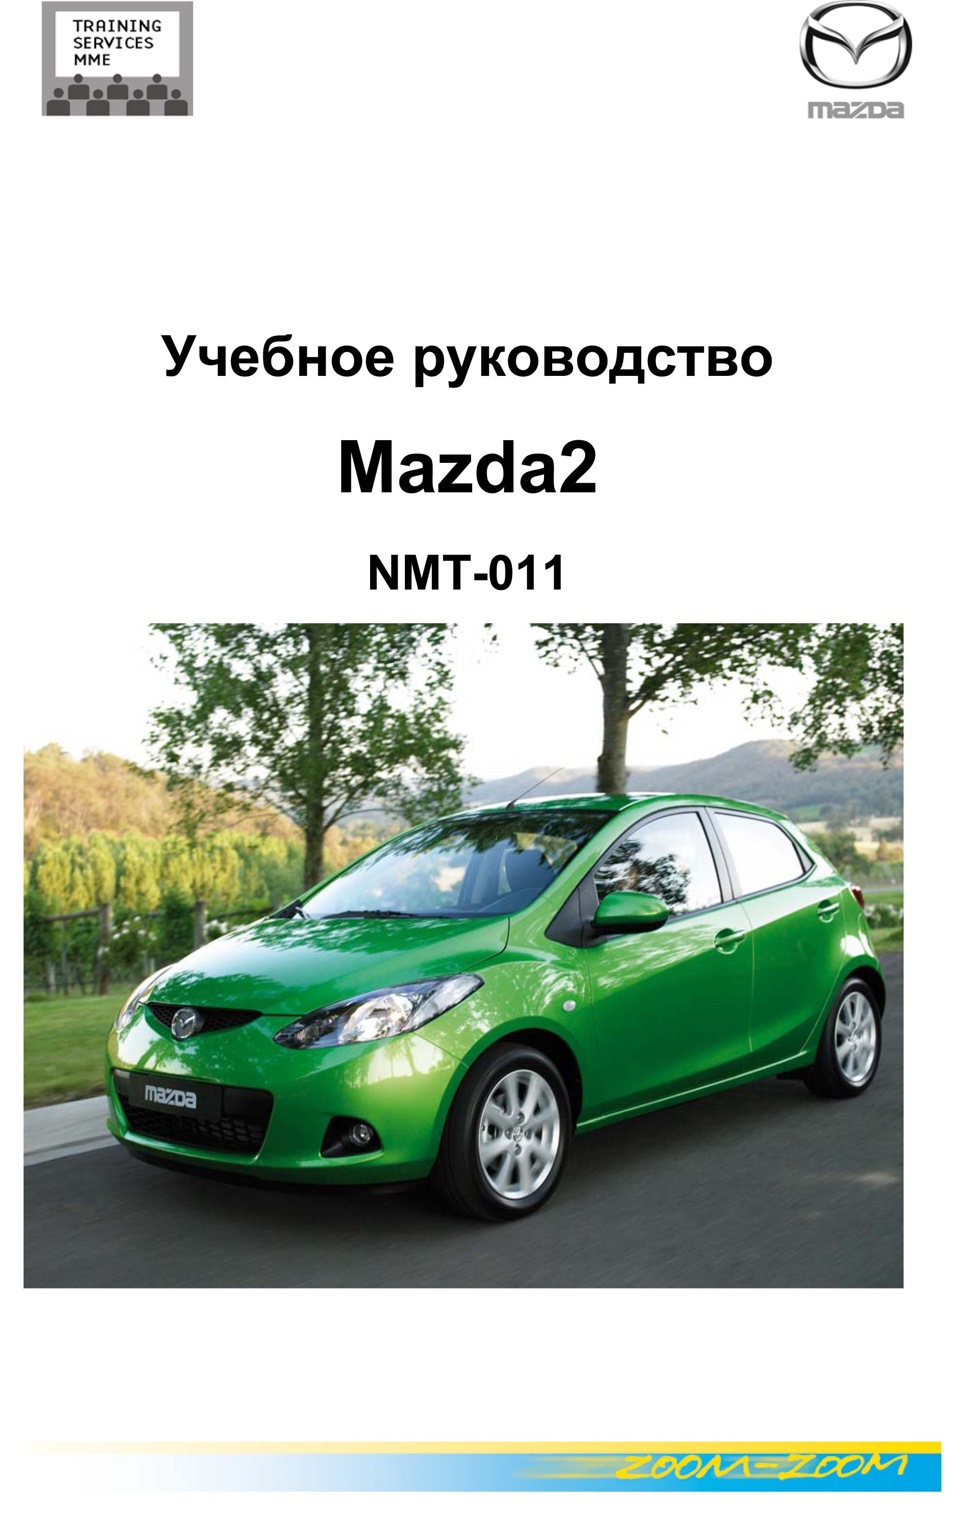 Книга mazda. Мазда мануал. Книга Mazda 2. Руководство по ремонту Mazda 2. Мазда Демио книга.